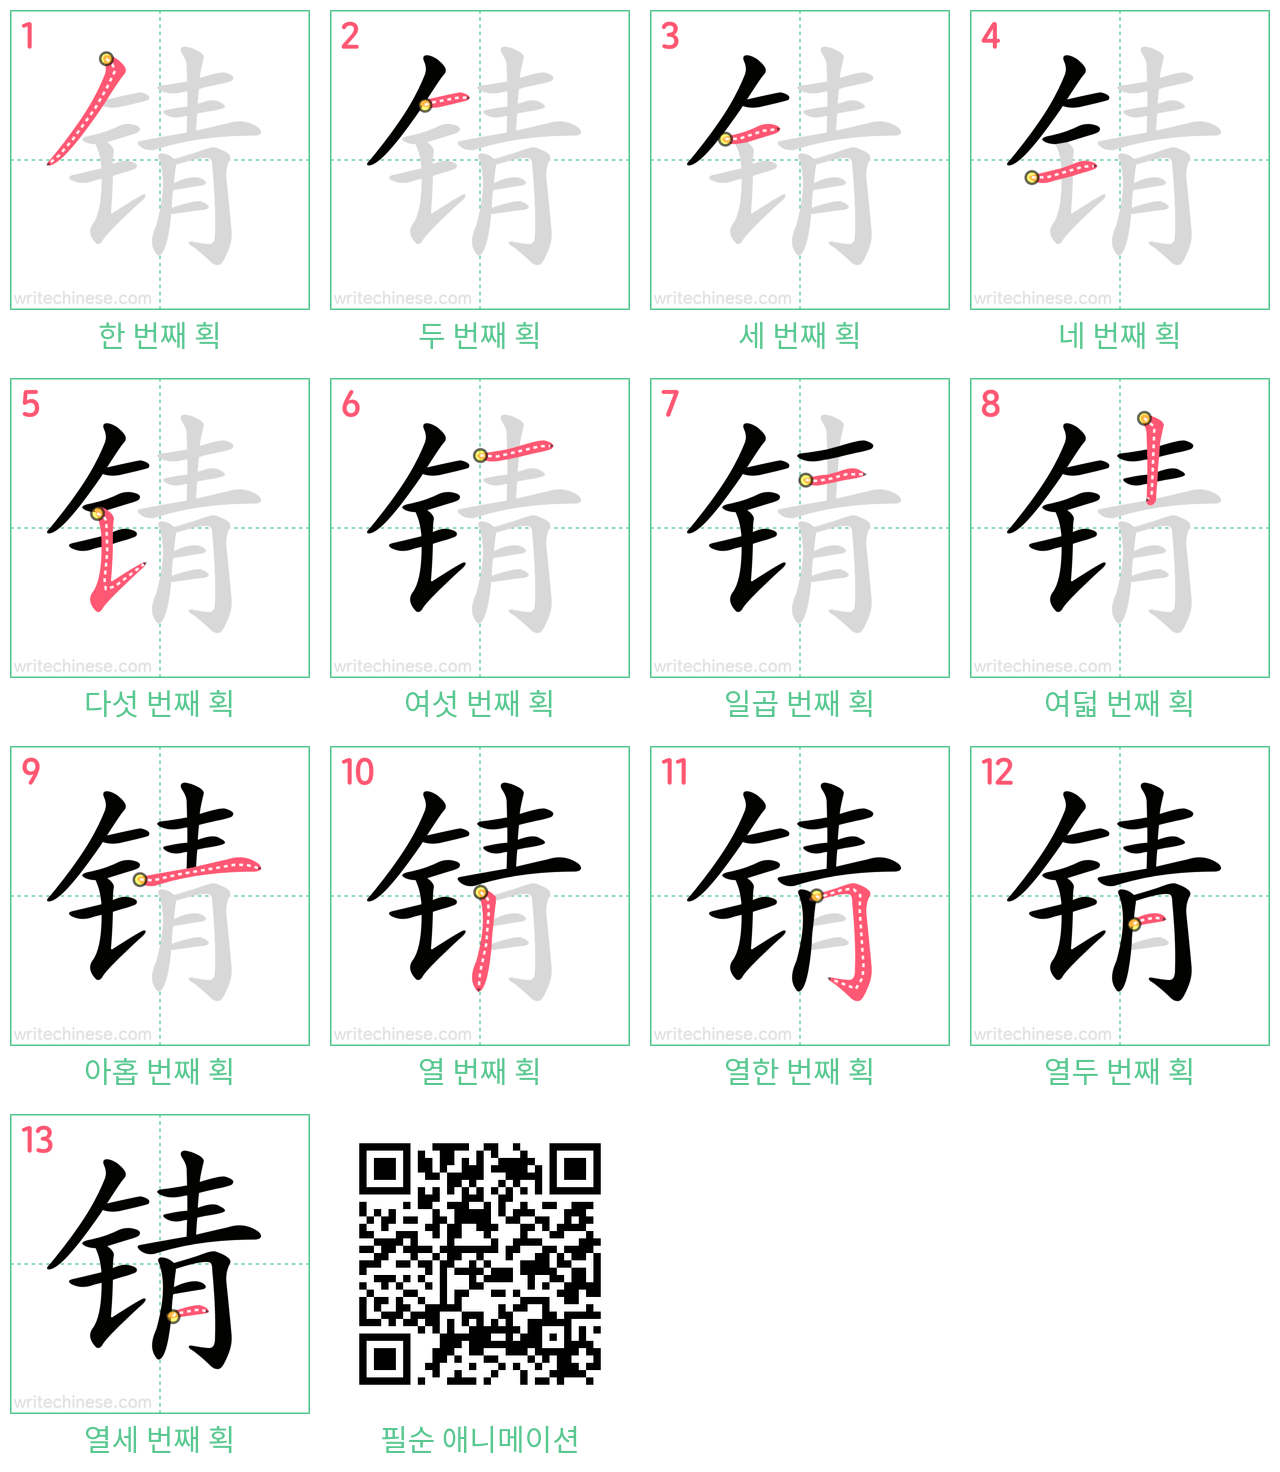 锖 step-by-step stroke order diagrams